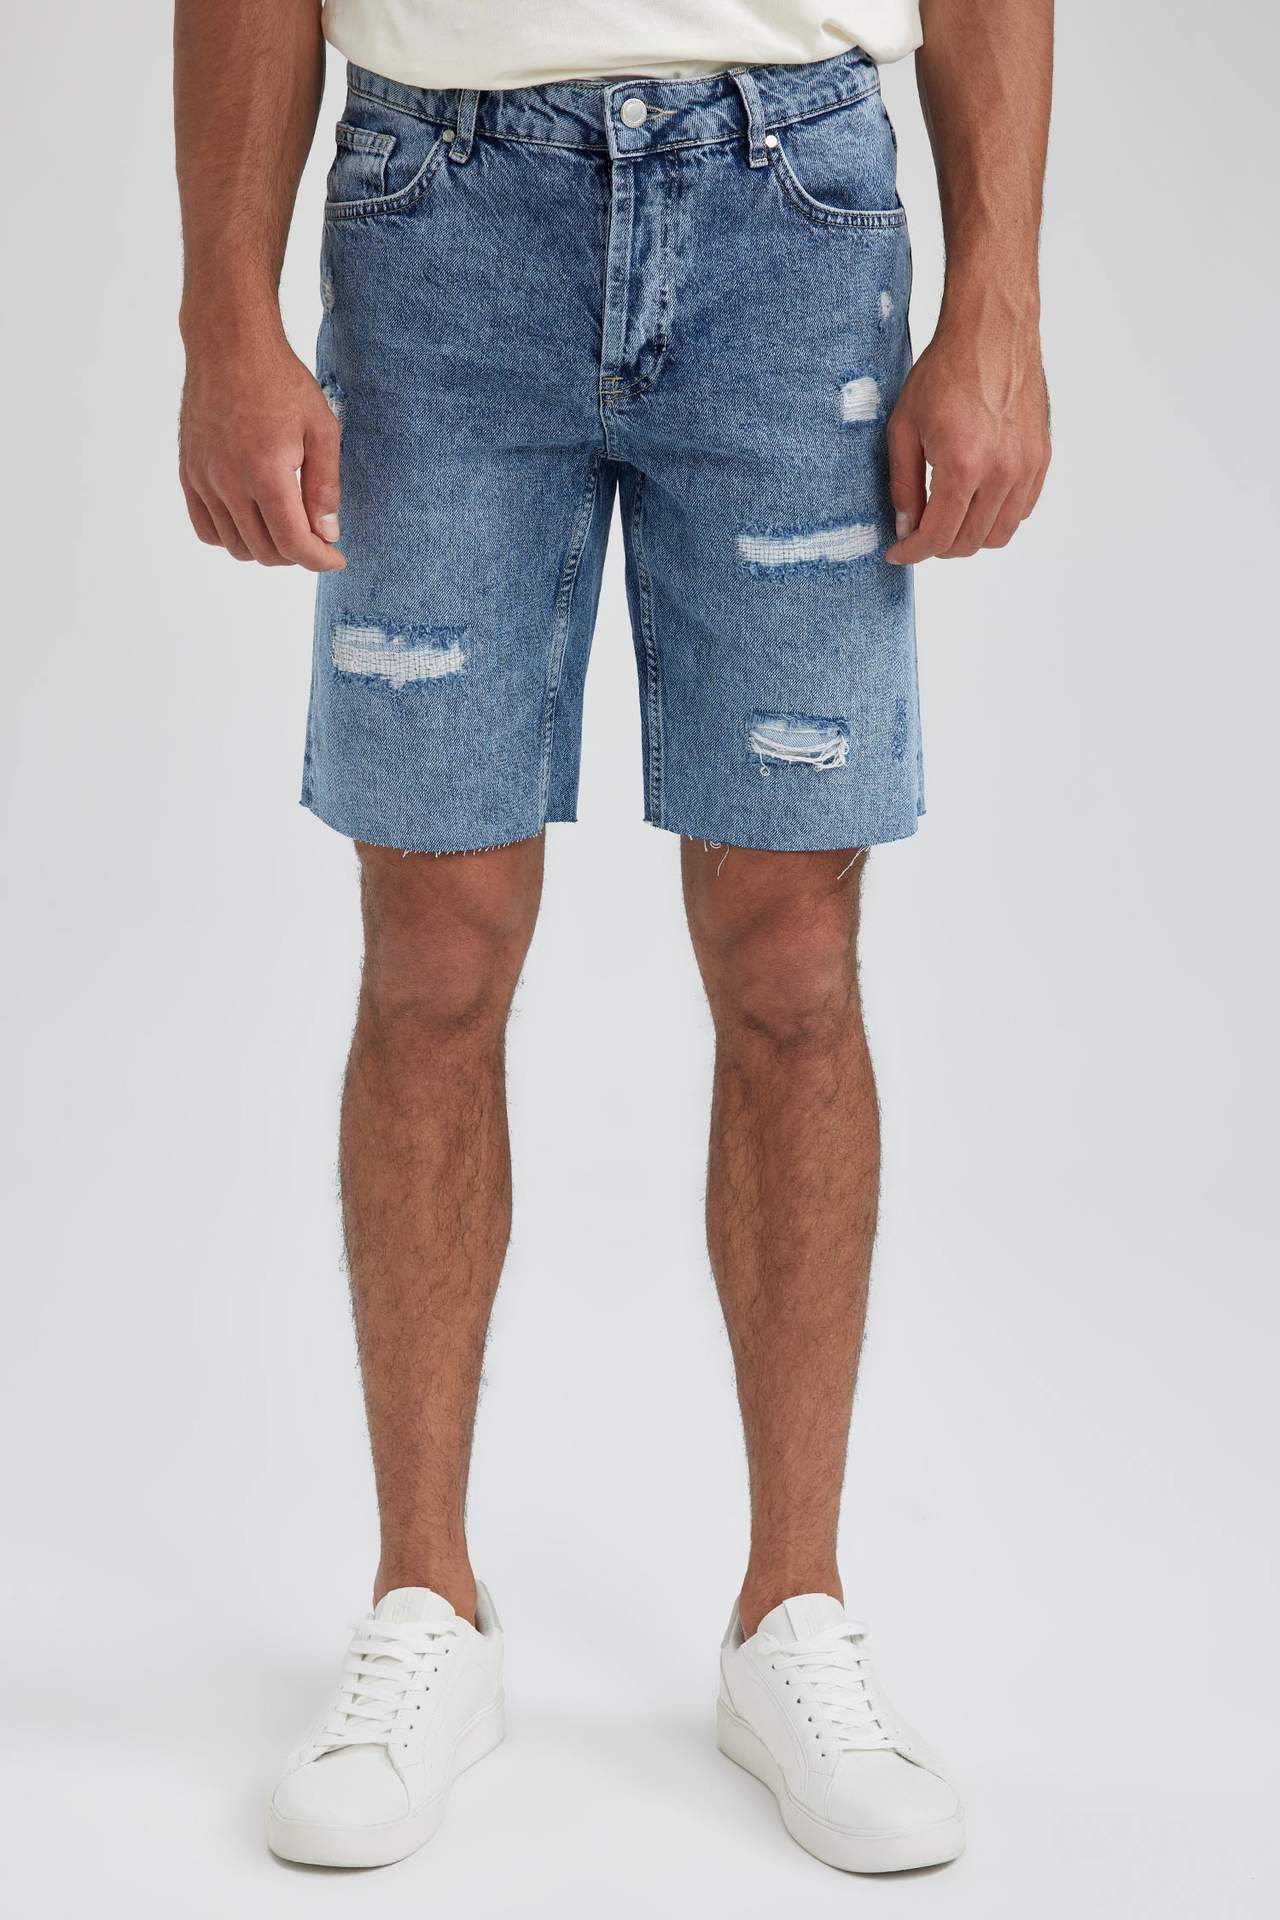 DEFACTO Slim Fit Jeans Bermuda